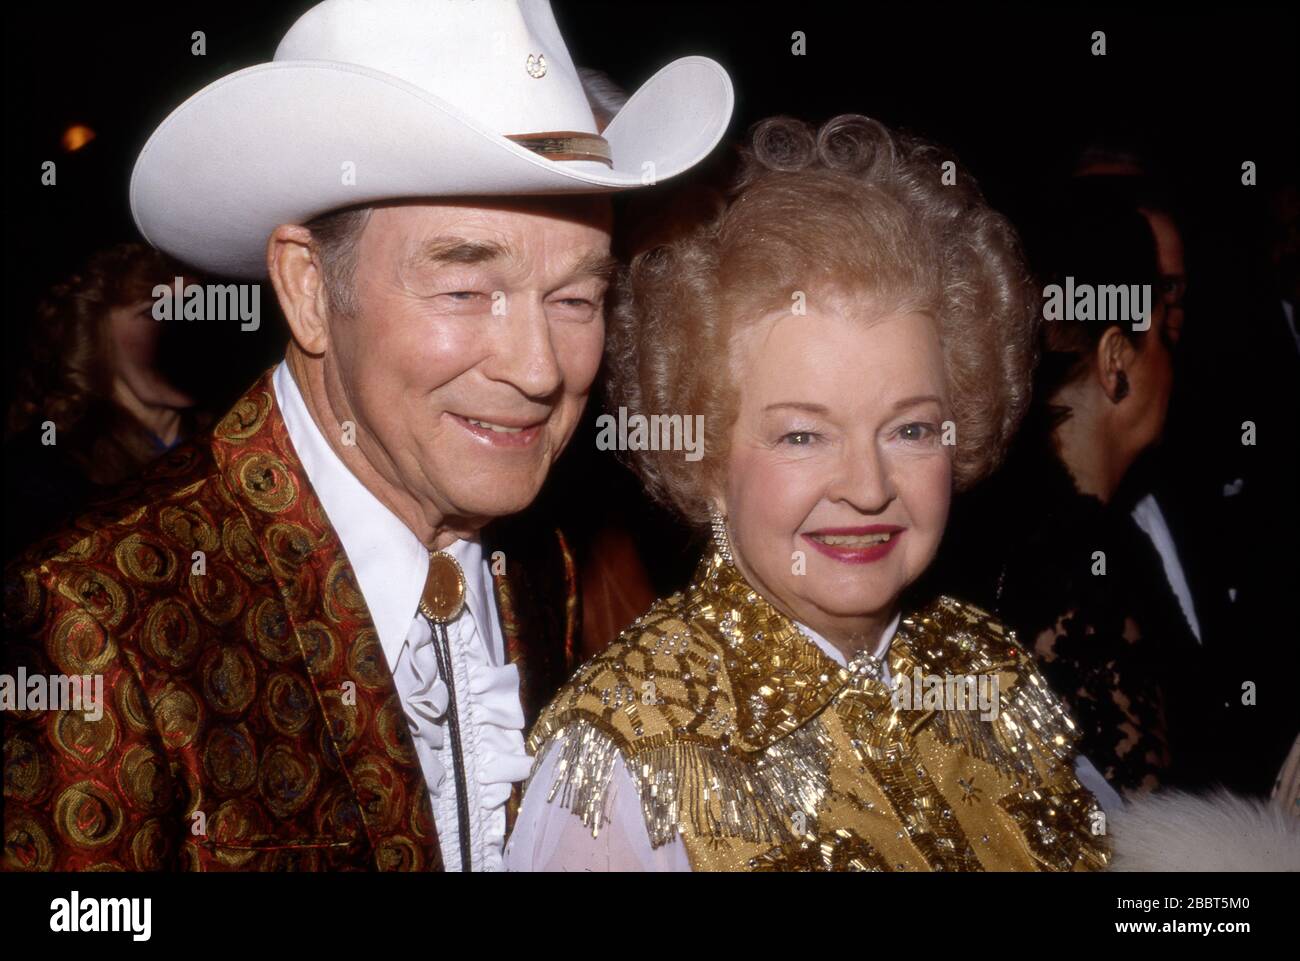 Roy Rogers e Dale Evans, star del cinema e della televisione di Cowboy, partecipano a un evento al gene Autry Museum di Los Angeles intorno agli anni ottanta. Foto Stock